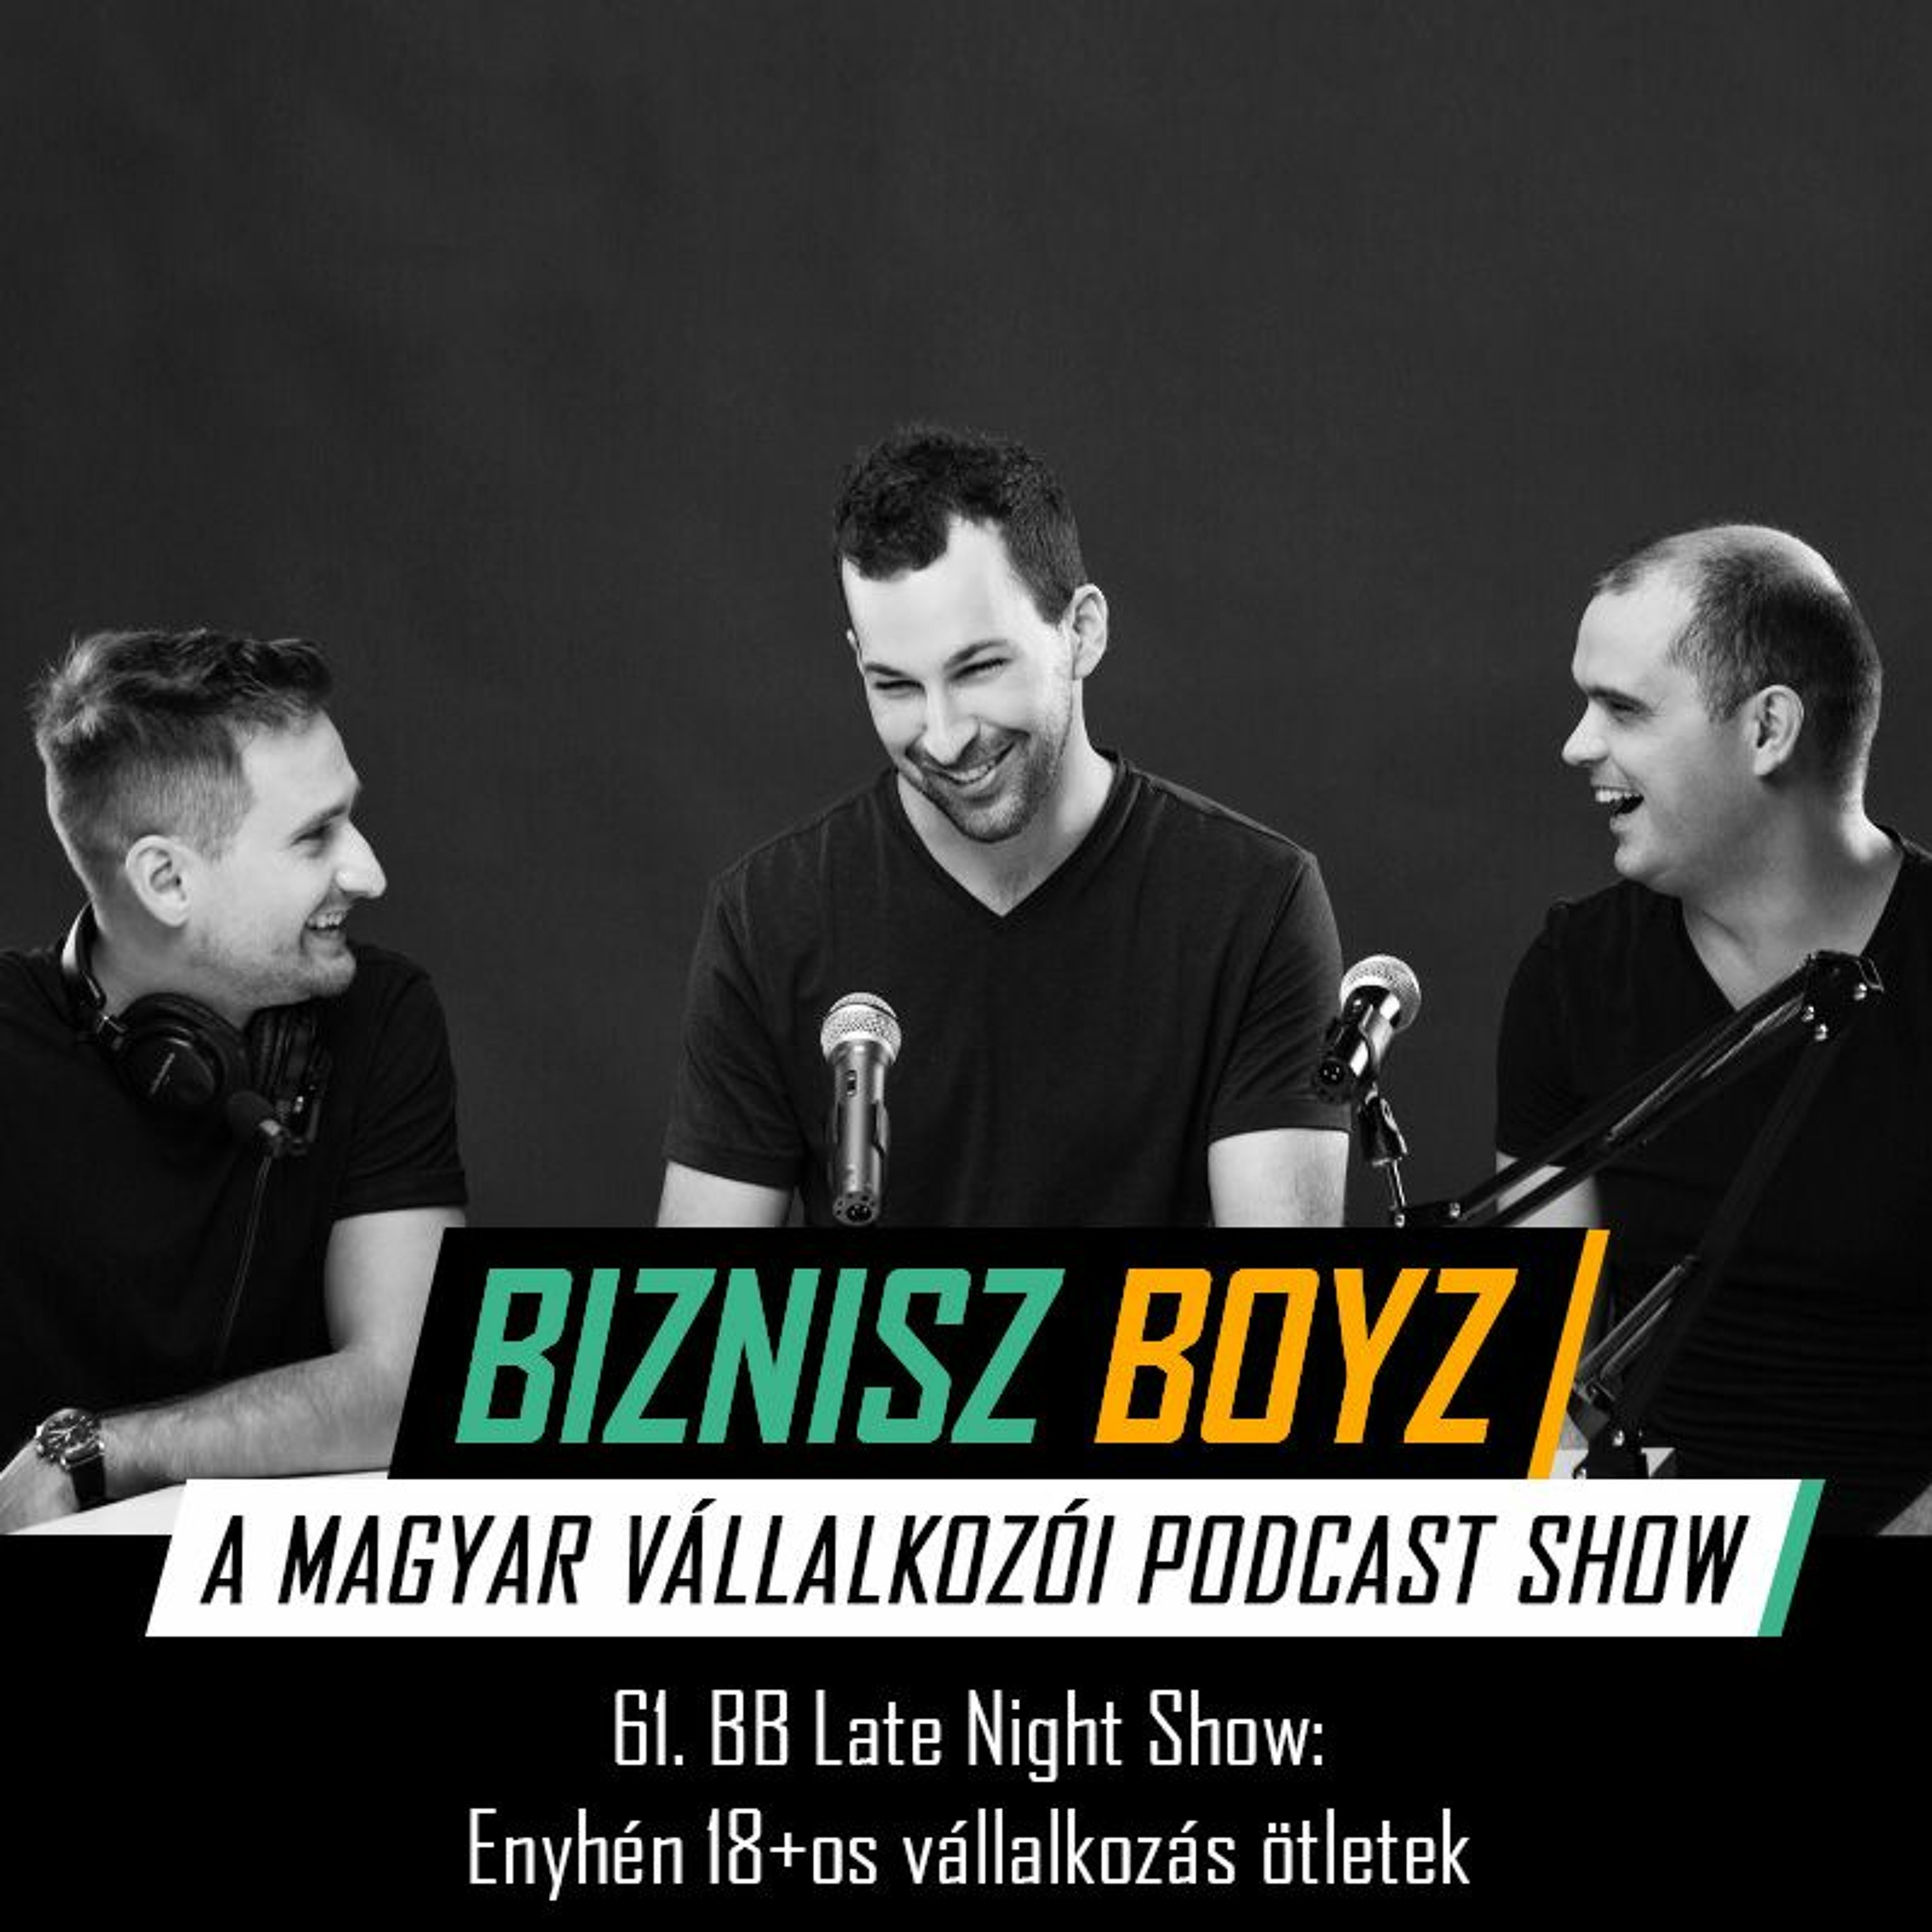 61. BB Late Night Show: Enyhén 18+os vállalkozás ötletek | Biznisz Boyz Podcast